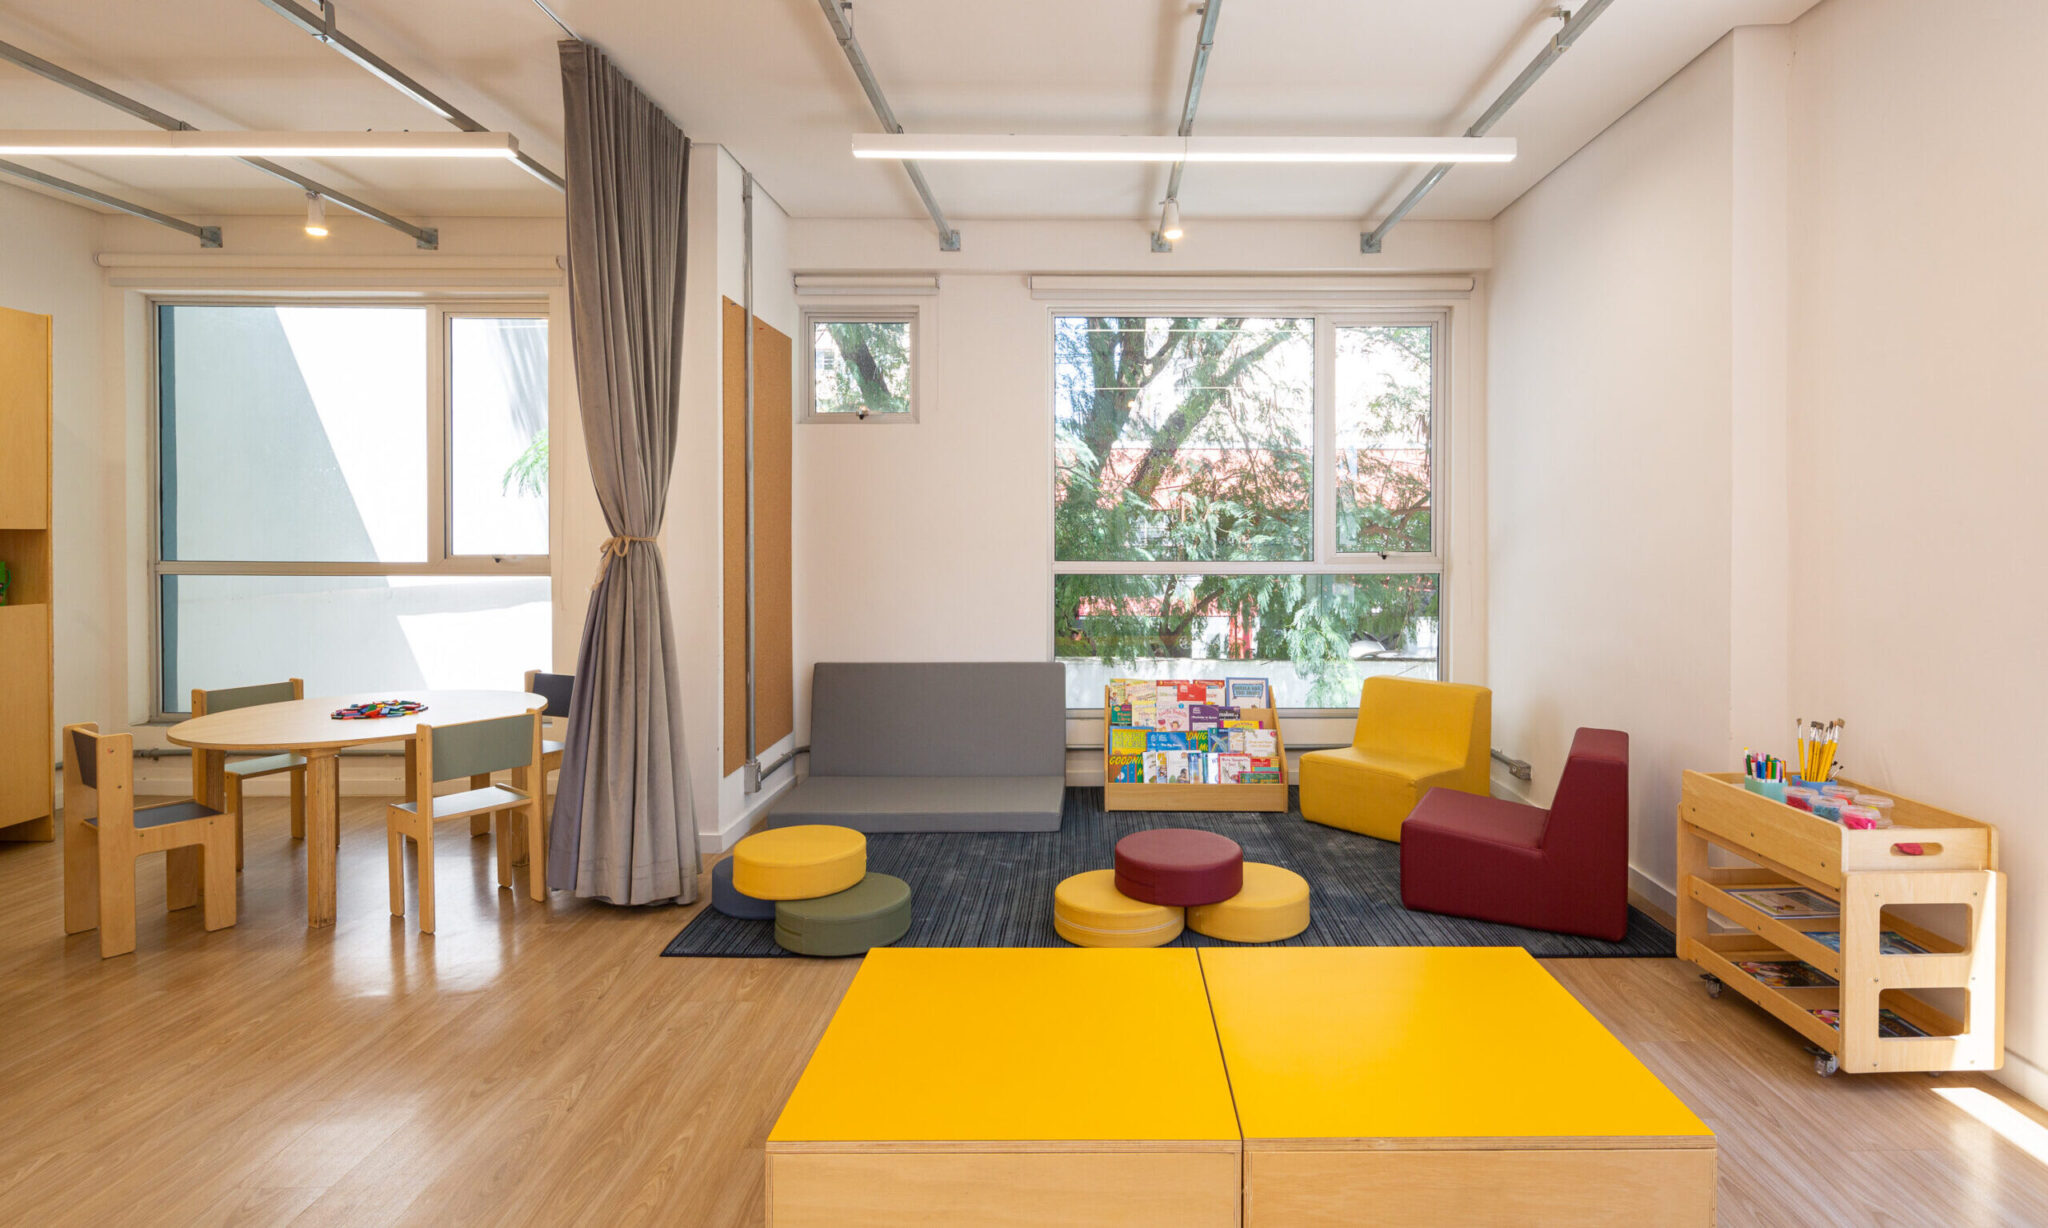 escola Camino, ambiente aberto com estofados infantis, cadeiras e mesa, biblioteca com livros